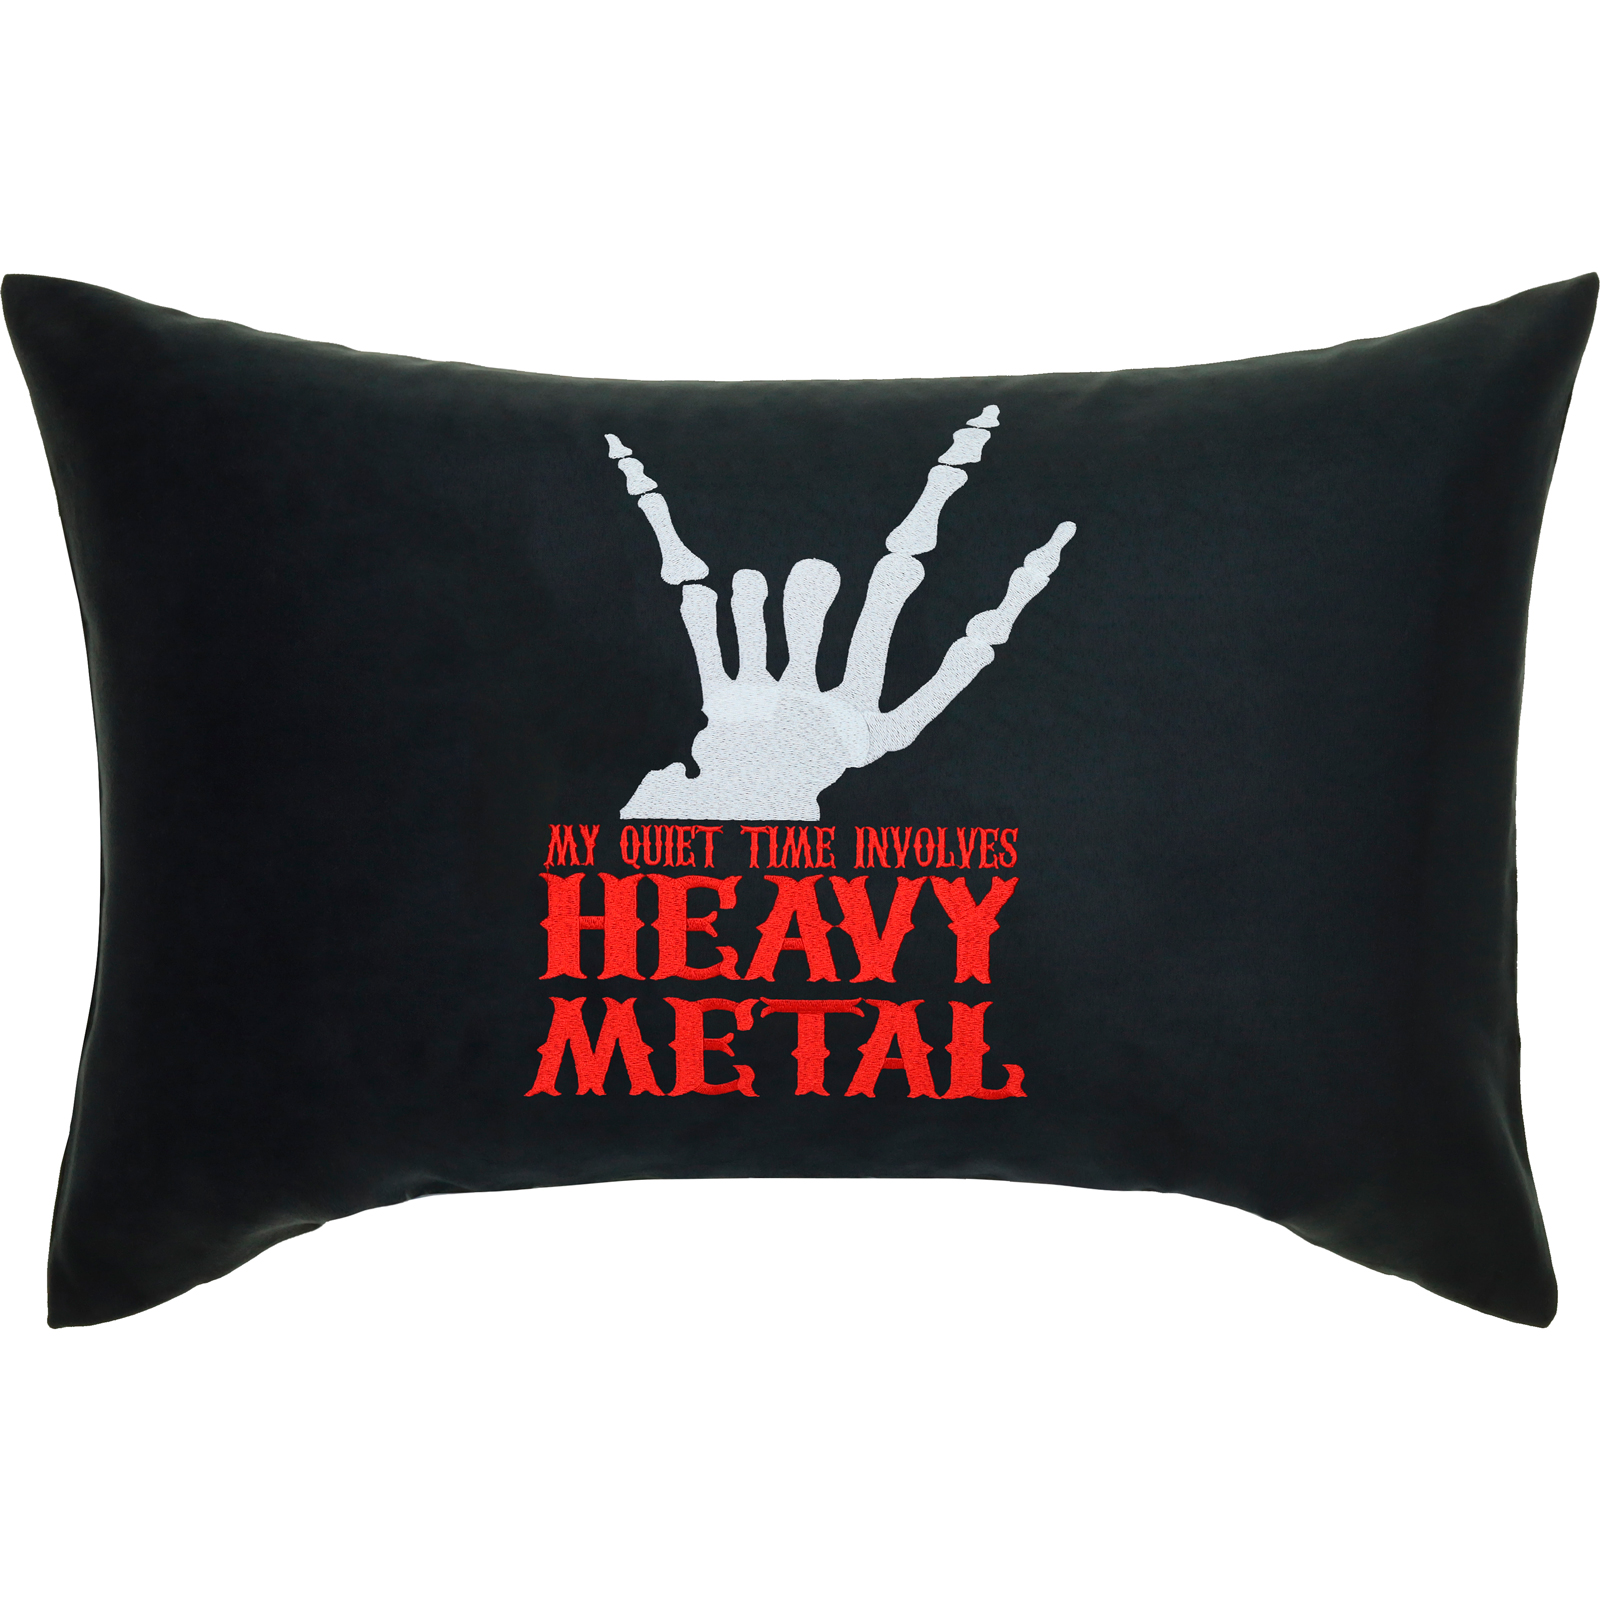 Heavy Metal - Quiet Time